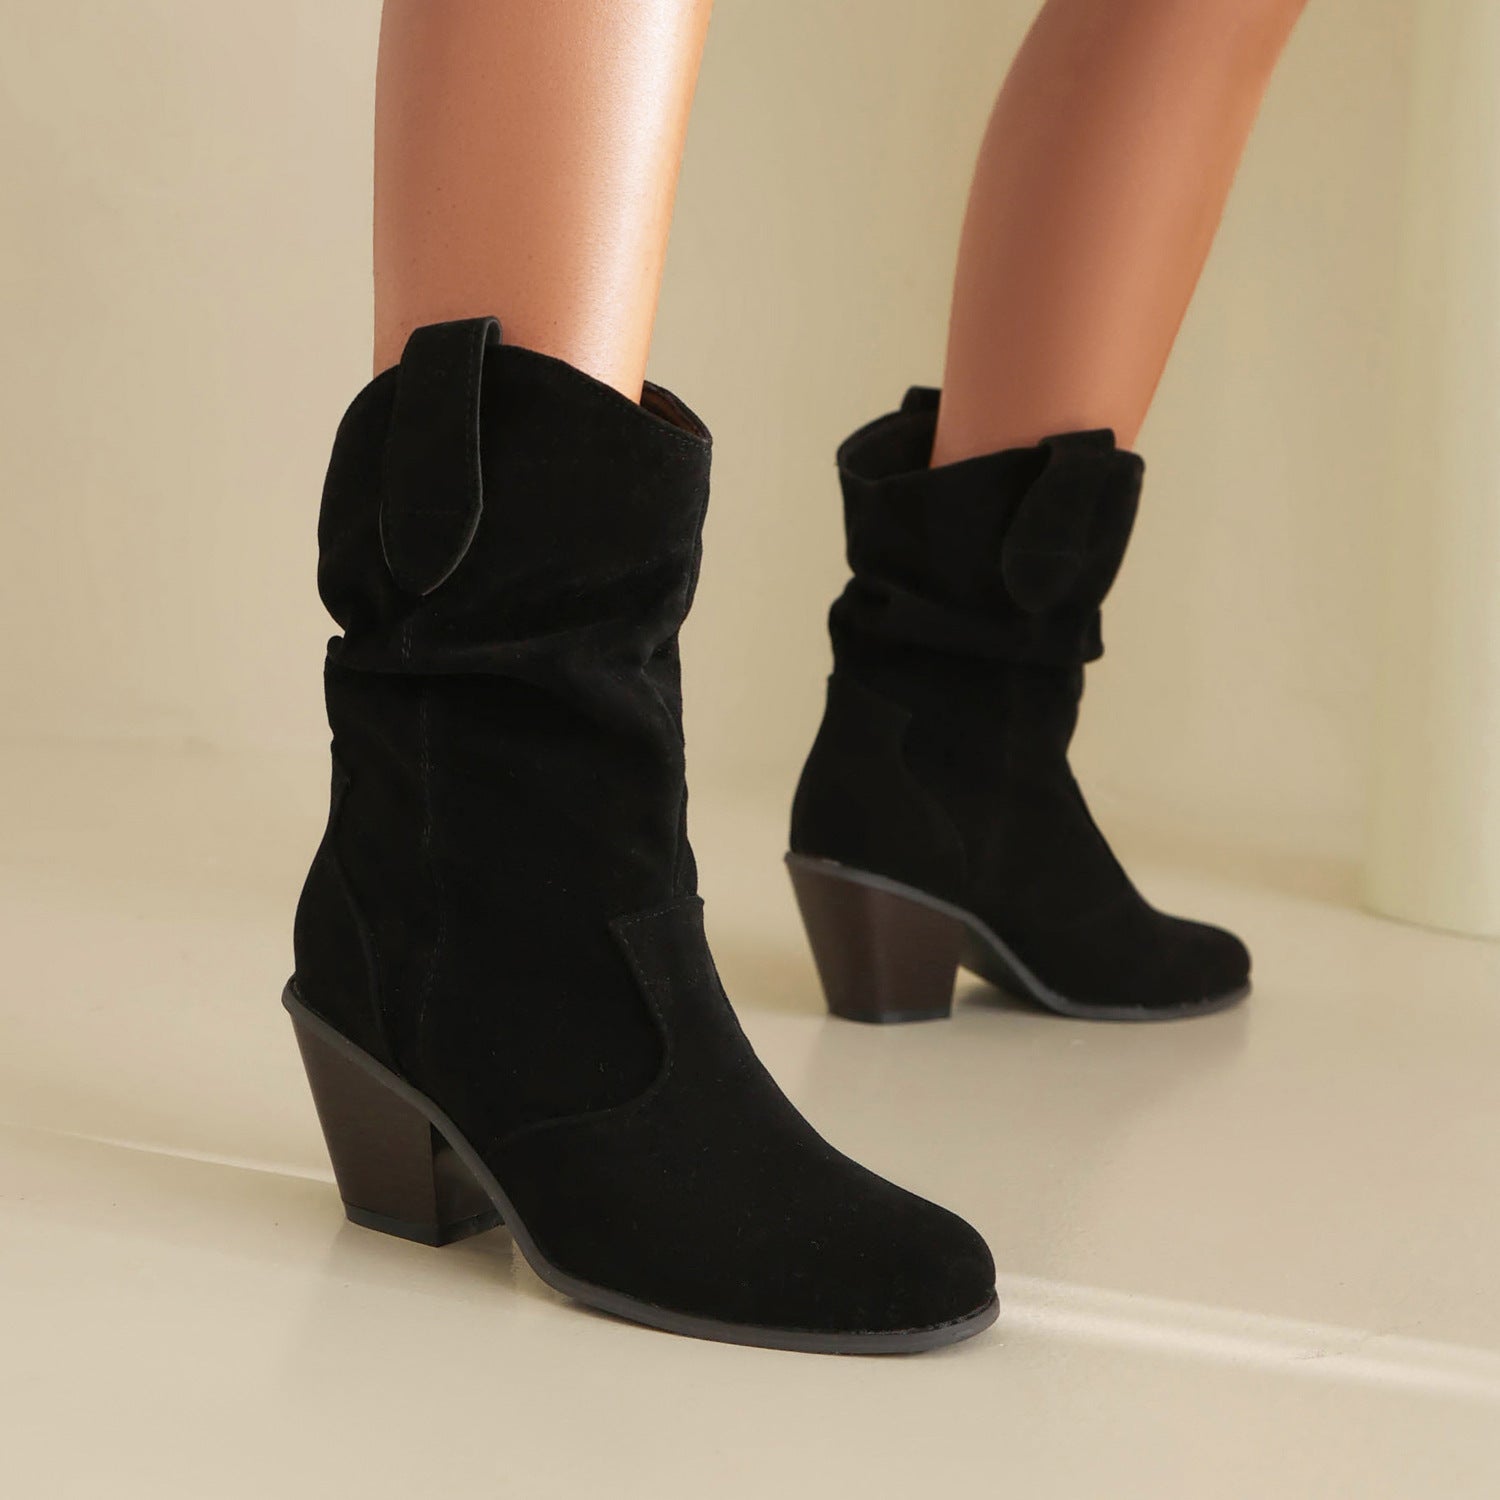 Women's New Short Fashion Stylish Boots